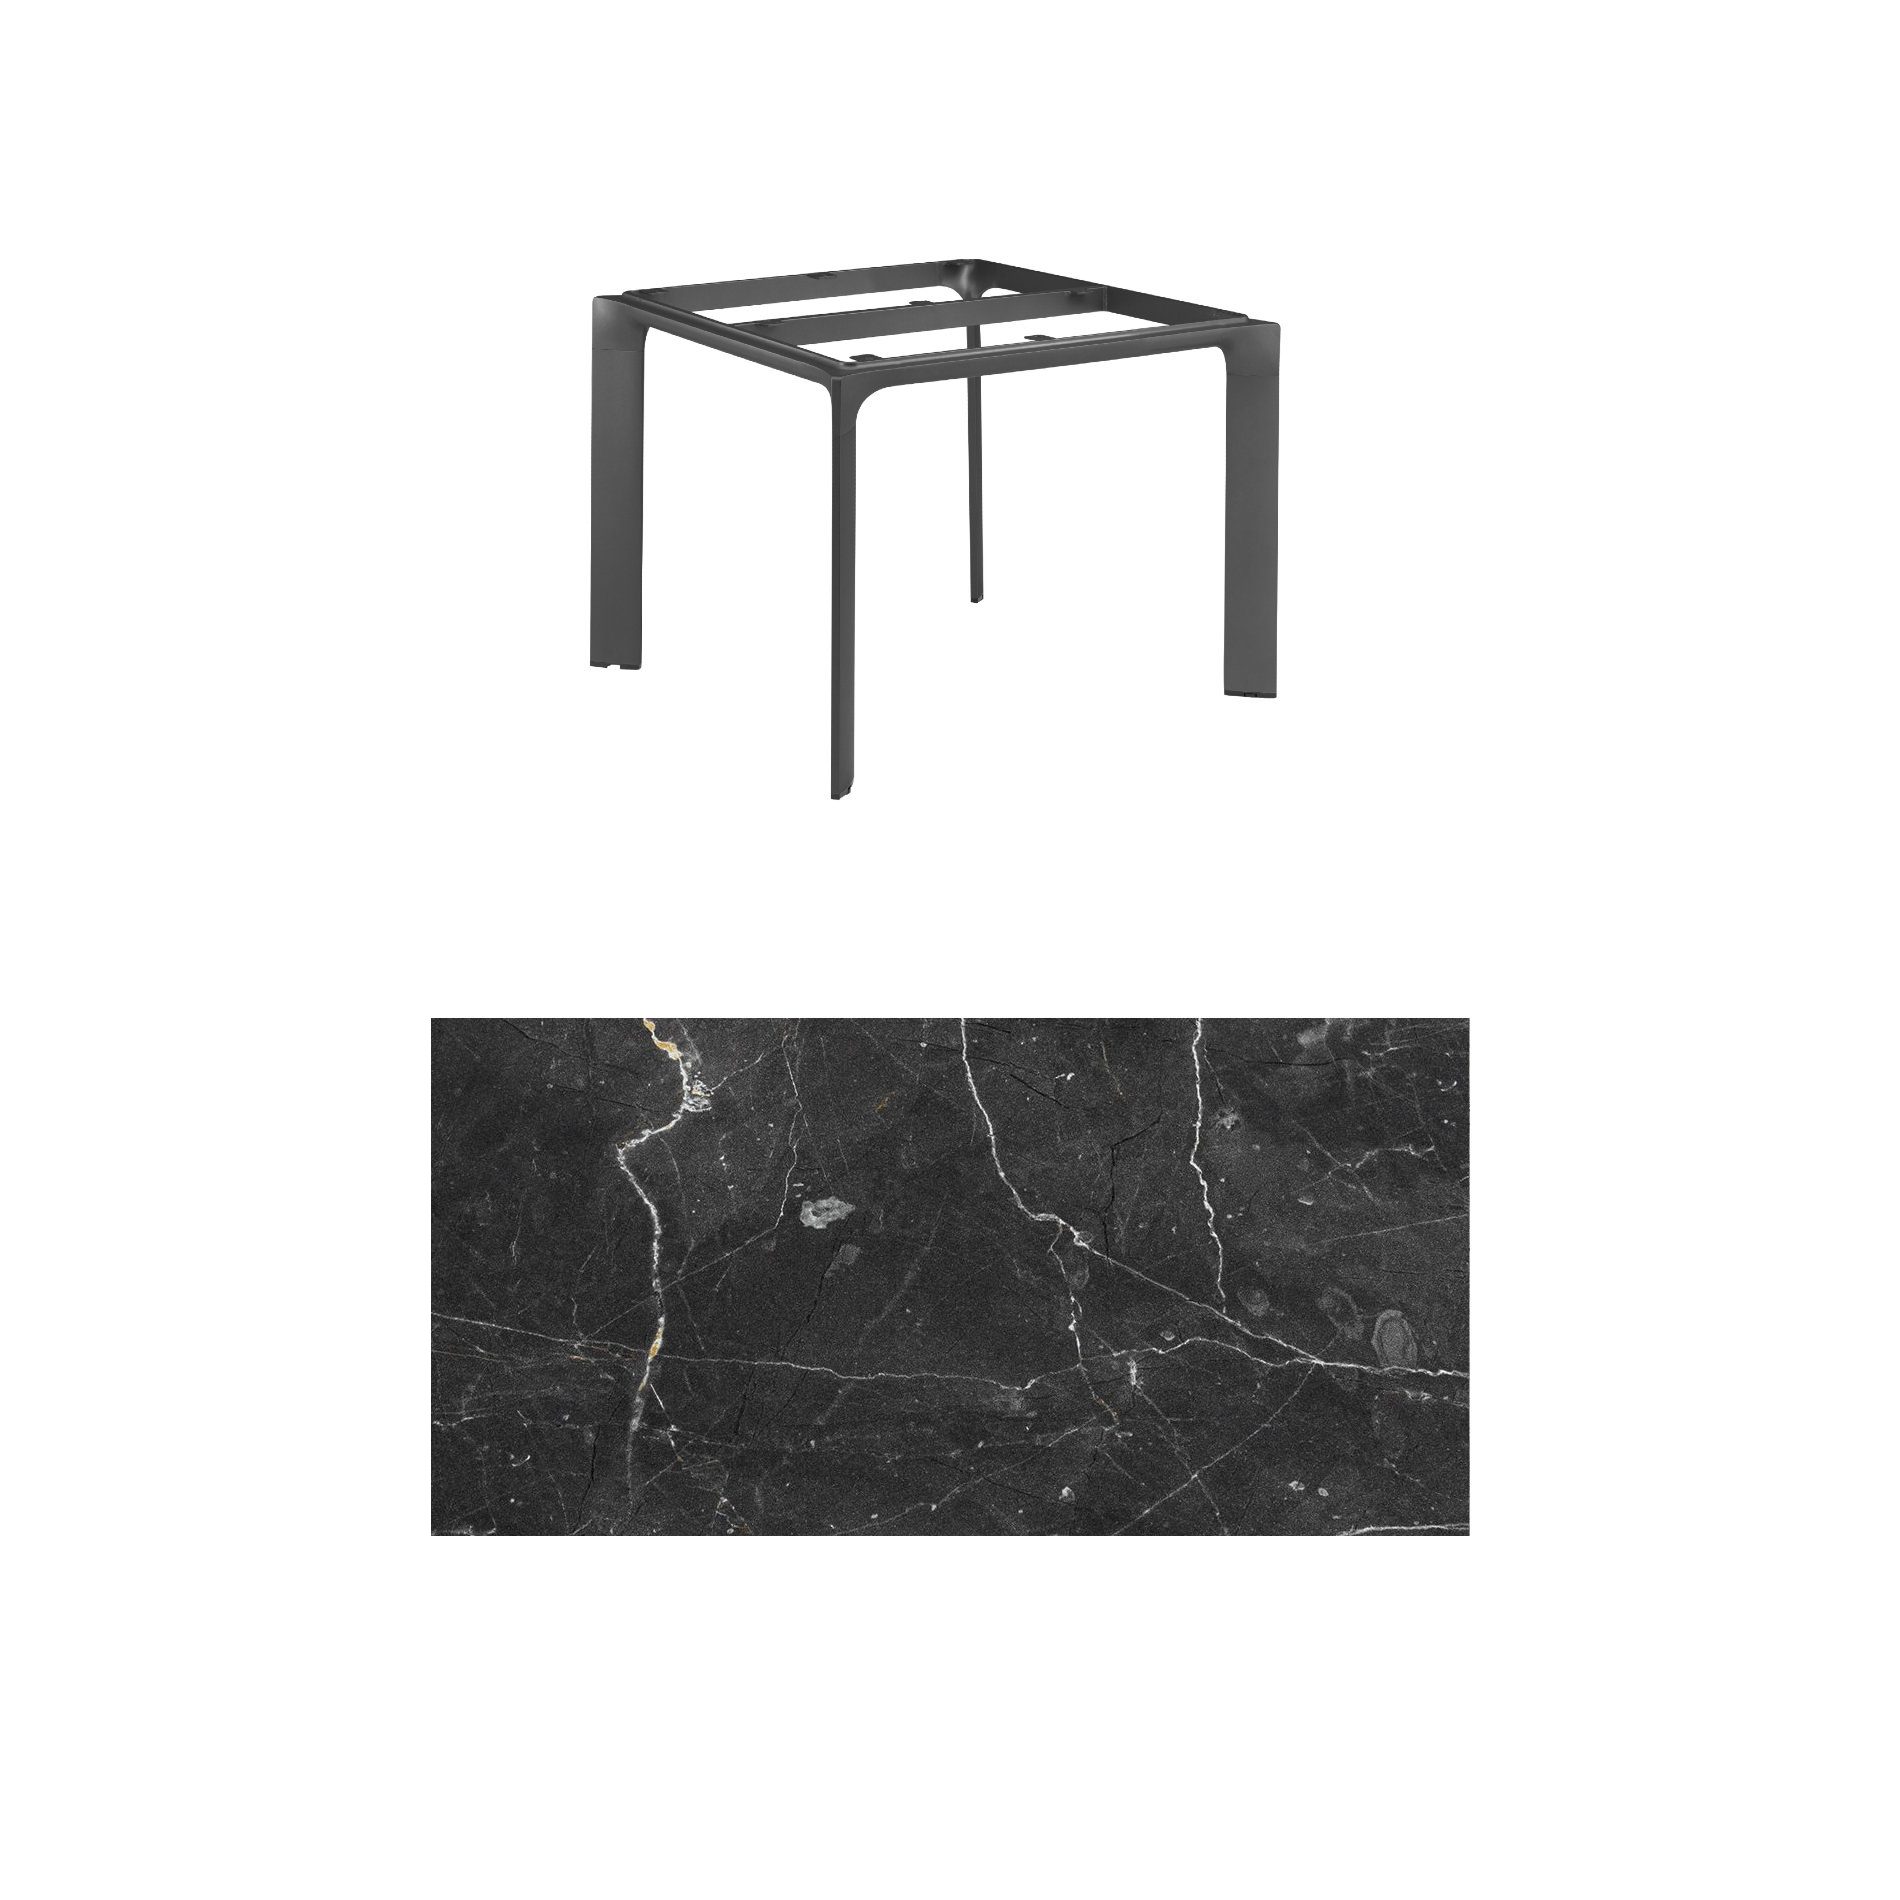 Kettler "Diamond" Tischsystem Gartentisch, Gestell Aluminium anthrazit, Tischplatte HPL Marmor grau, 95x95 cm